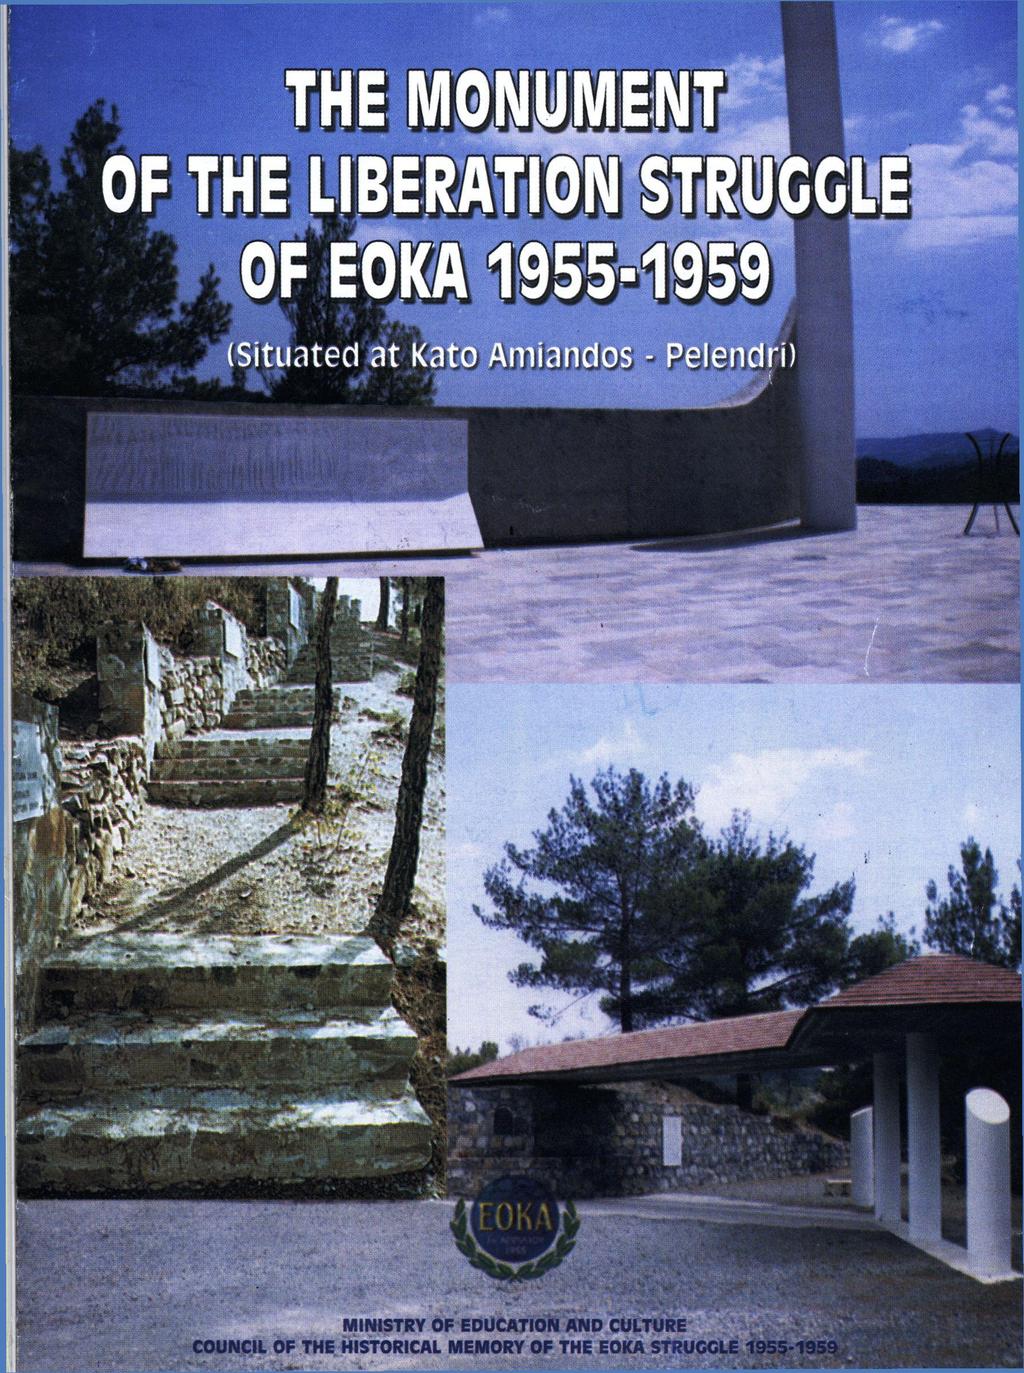 THE MONUMENT OF THE LIBERATION STRUGGLE OF EOKA 1955-1959 (Situated at Kato Amiandos - Pelendri)